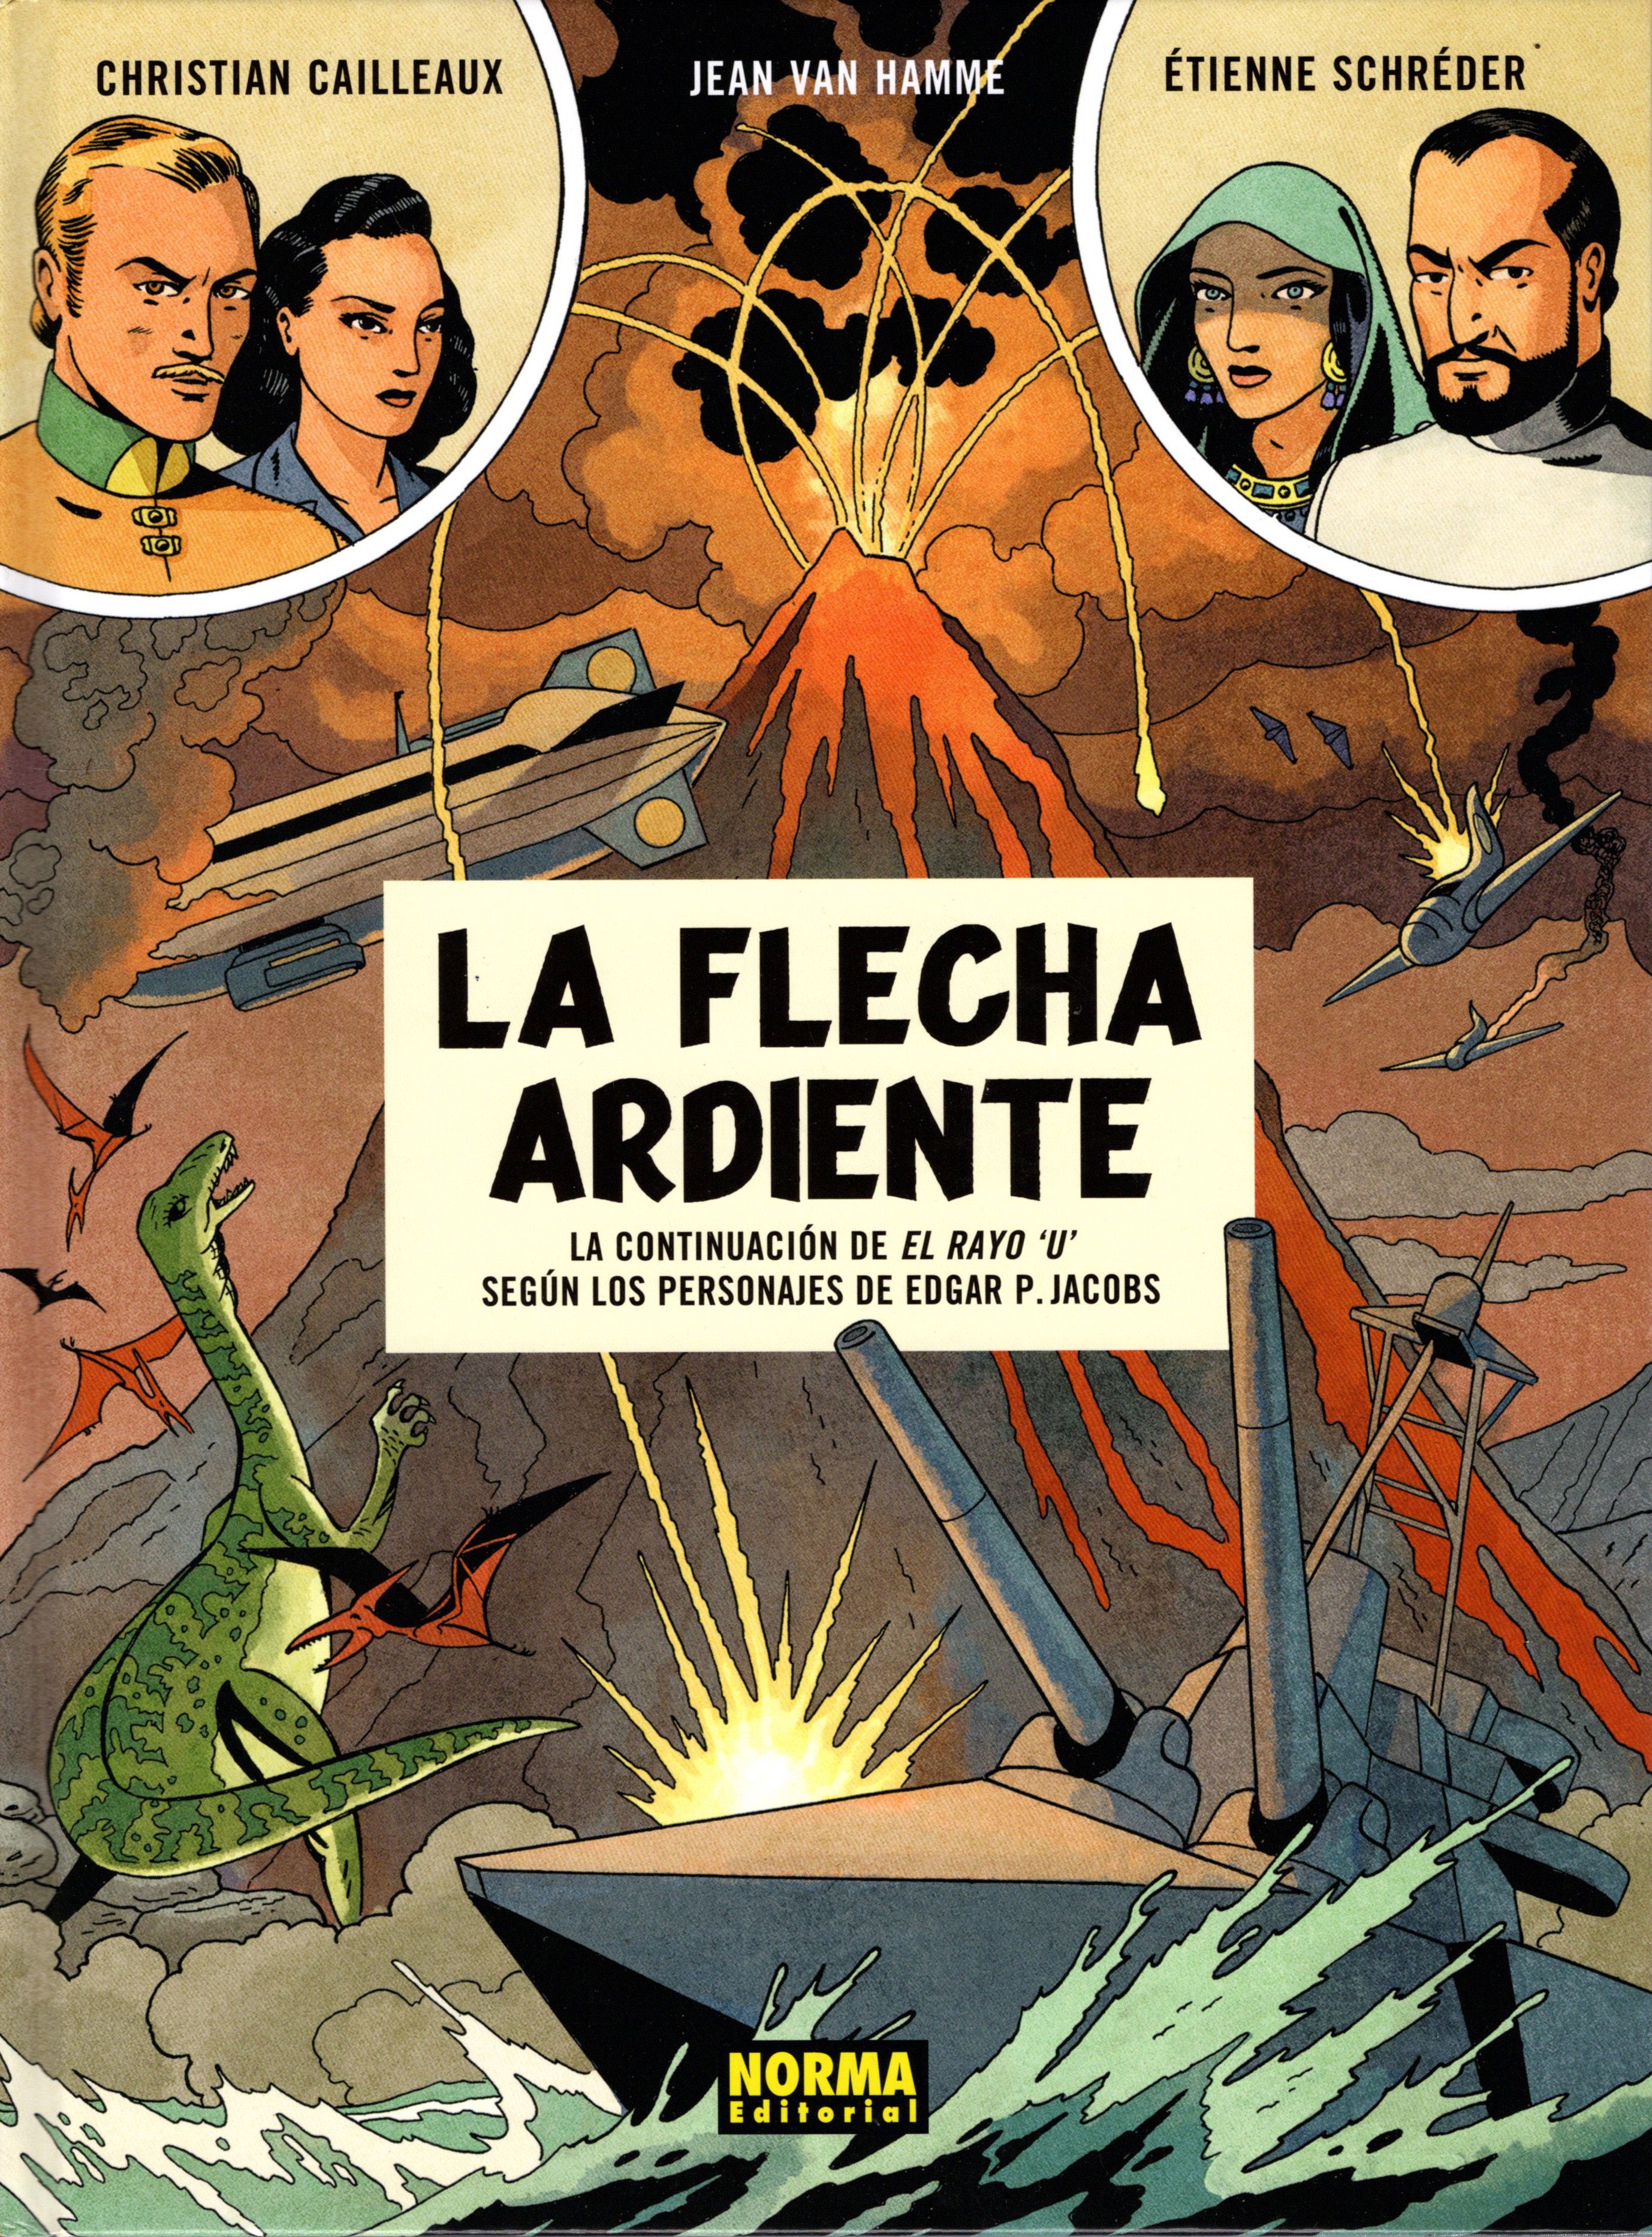 Christian Cailleaux, Étienne Schréder, Jean Van Hamme: La flecha ardiente (Spanish language, Norma Editorial)